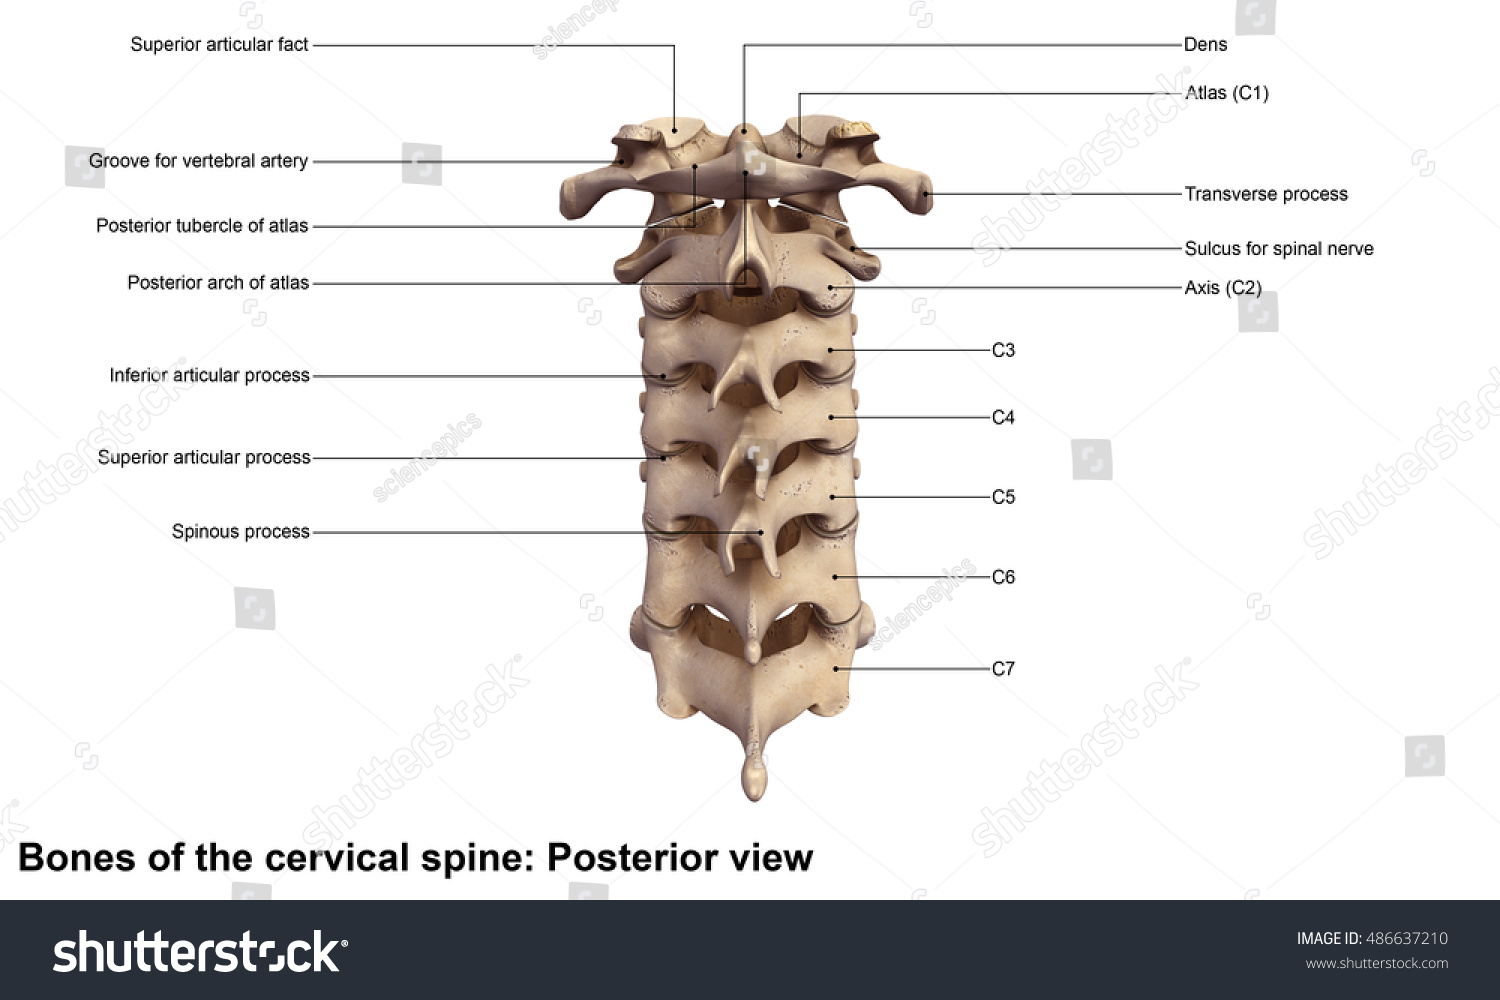 Cervical Spine Posterior View 3d Illustration - 486637210 : Shutterstock